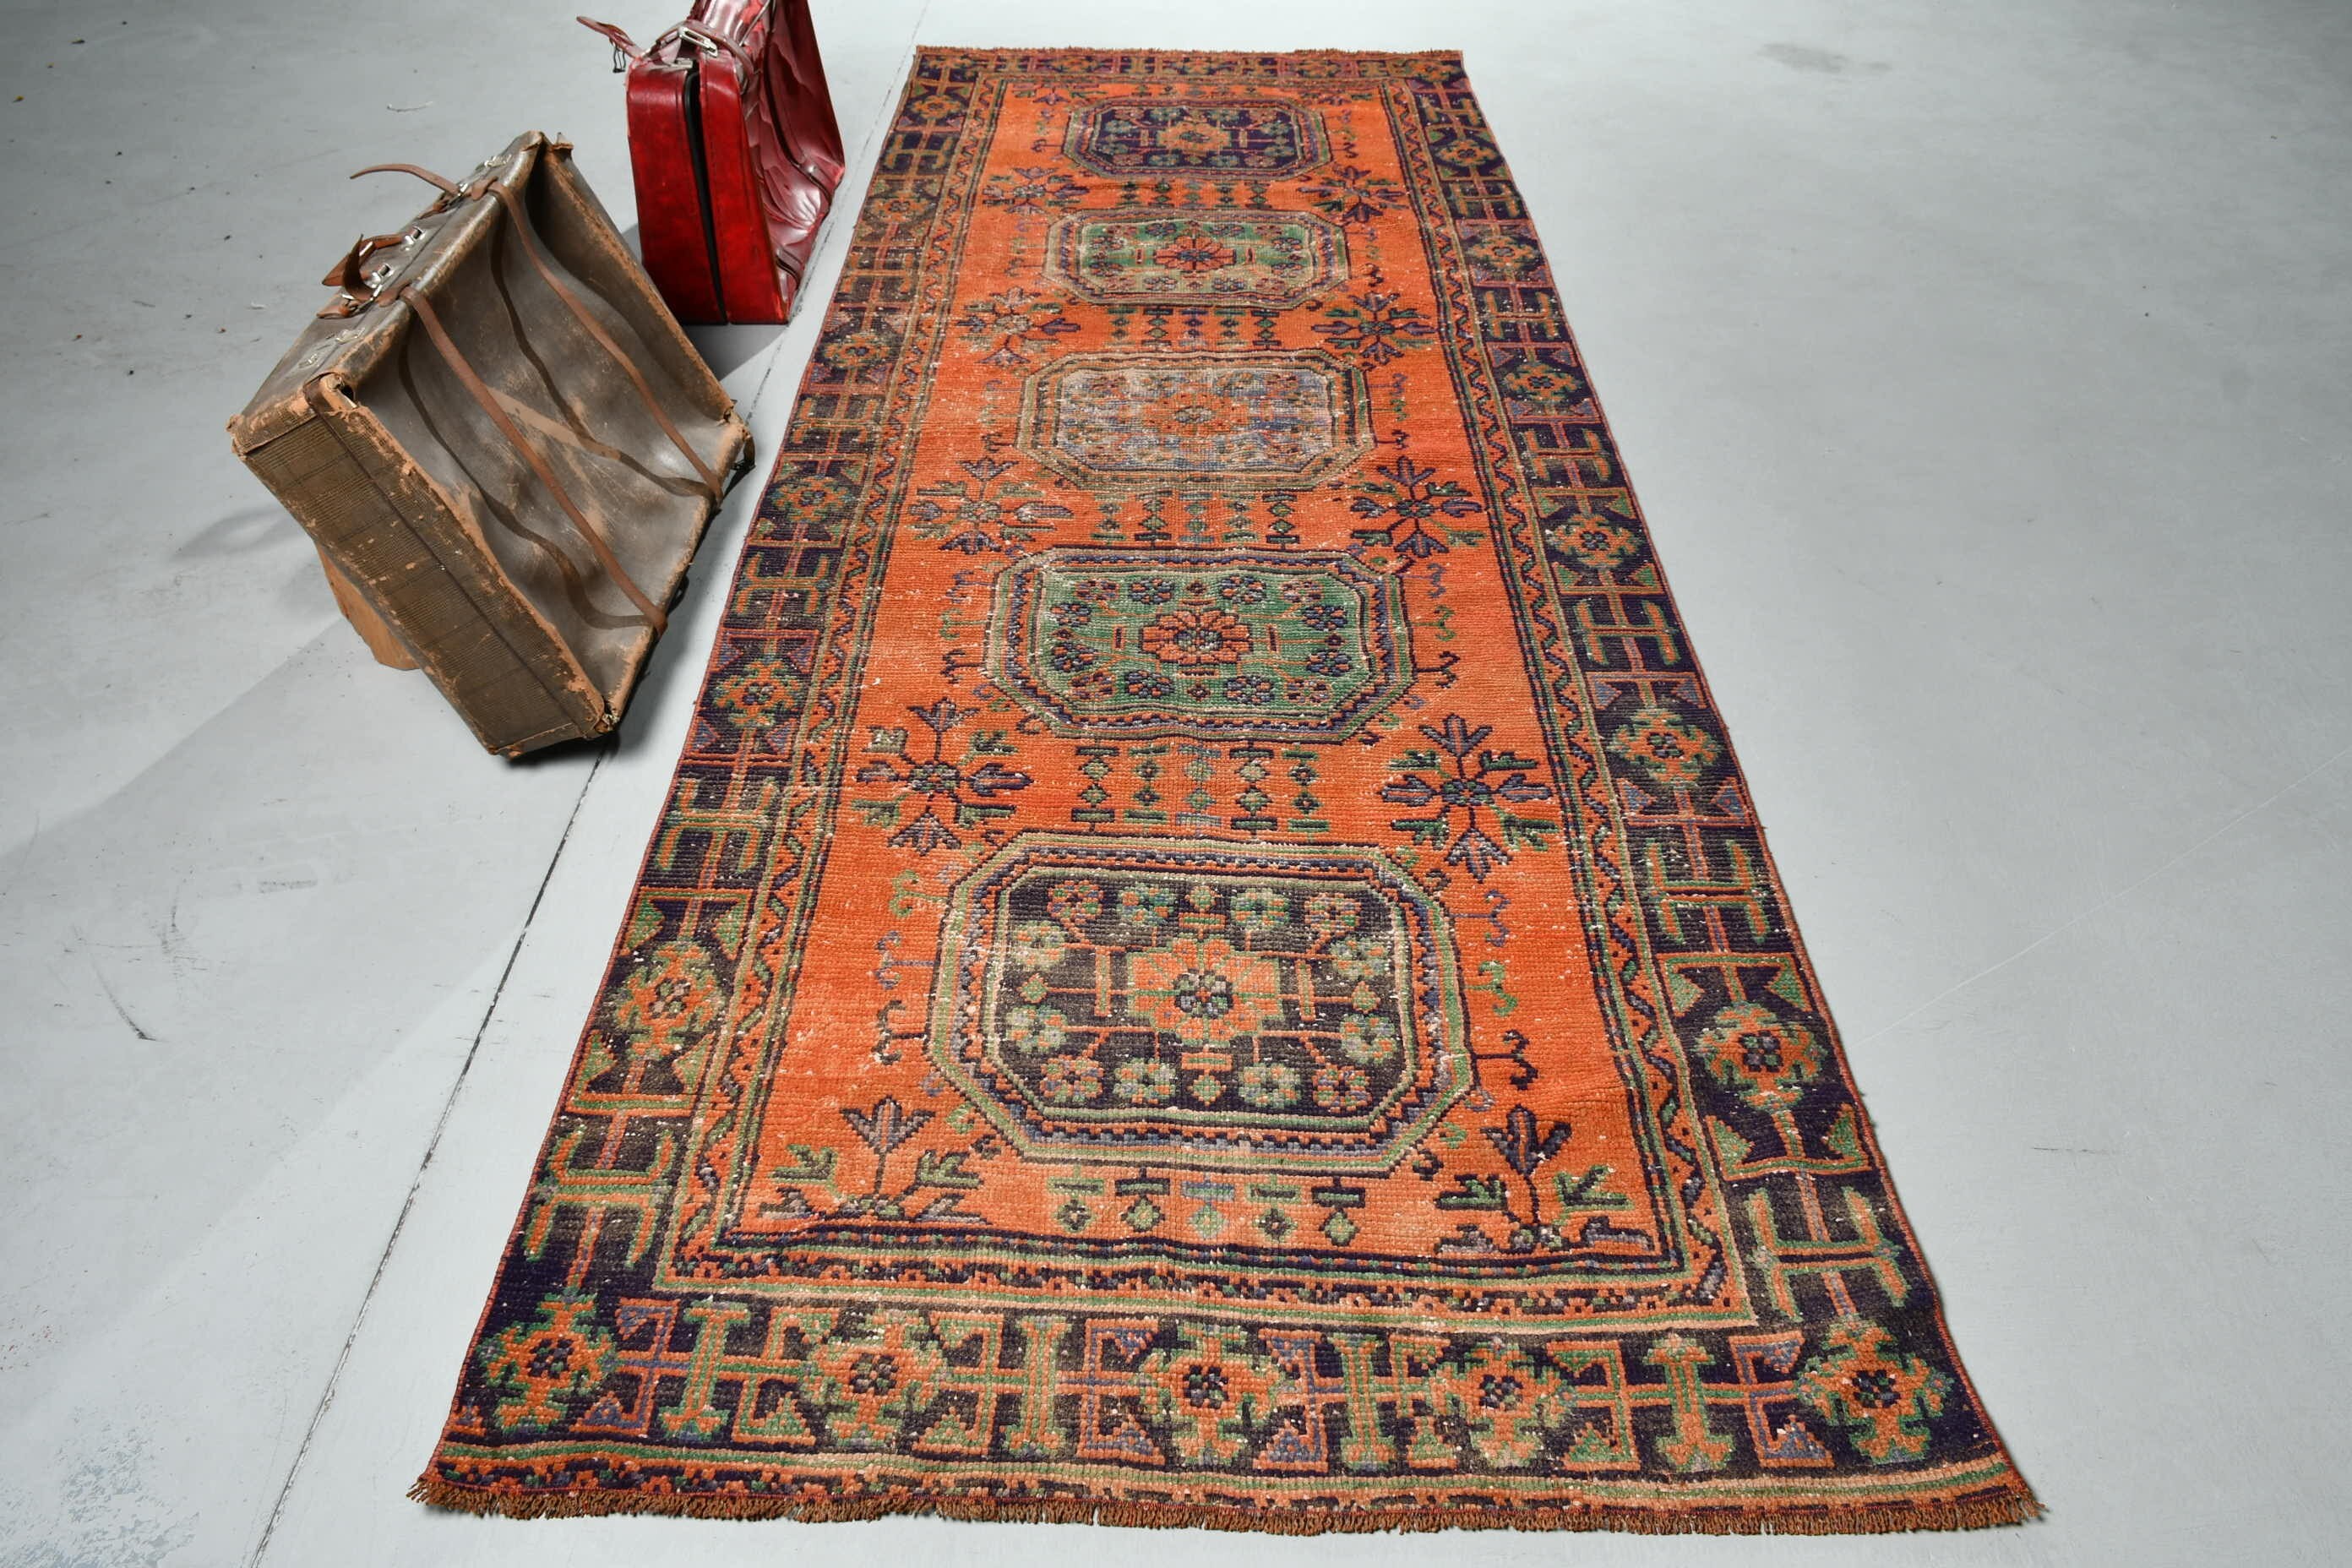 Stair Rug, Vintage Rug, Turkish Rugs, 4x10.4 ft Runner Rug, Orange Floor Rugs, Oriental Rug, Corridor Rugs, Rugs for Runner, Wool Rugs